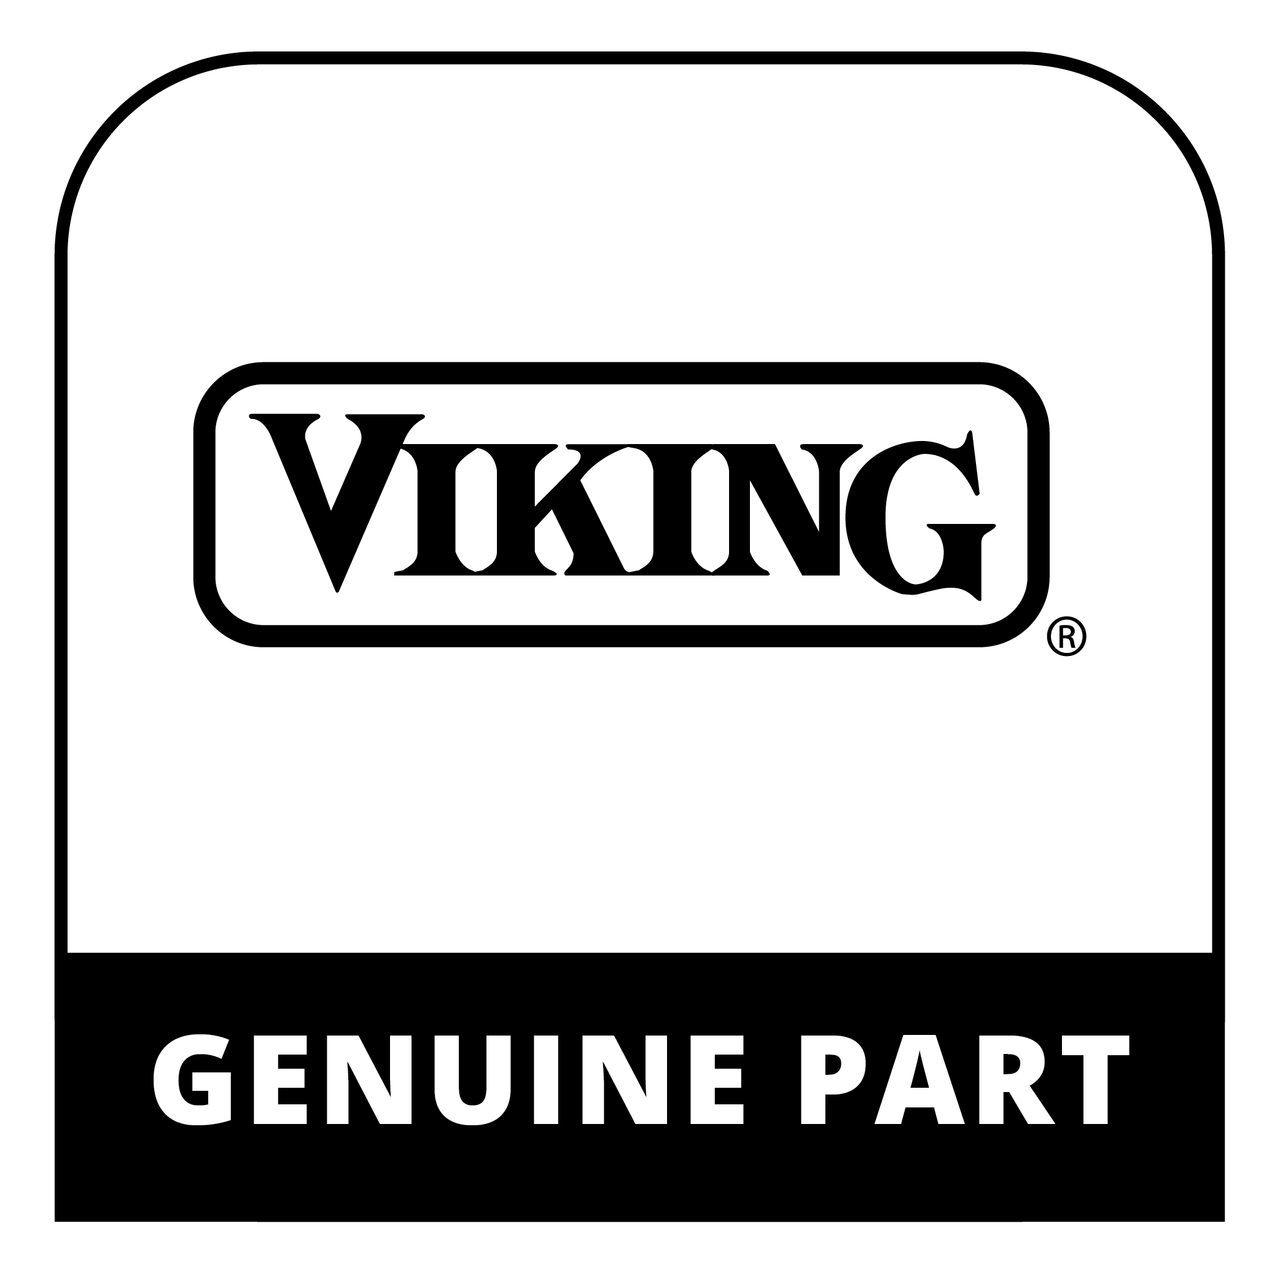 Viking 059268-000 - RUN CAPACITOR - Genuine Viking Part